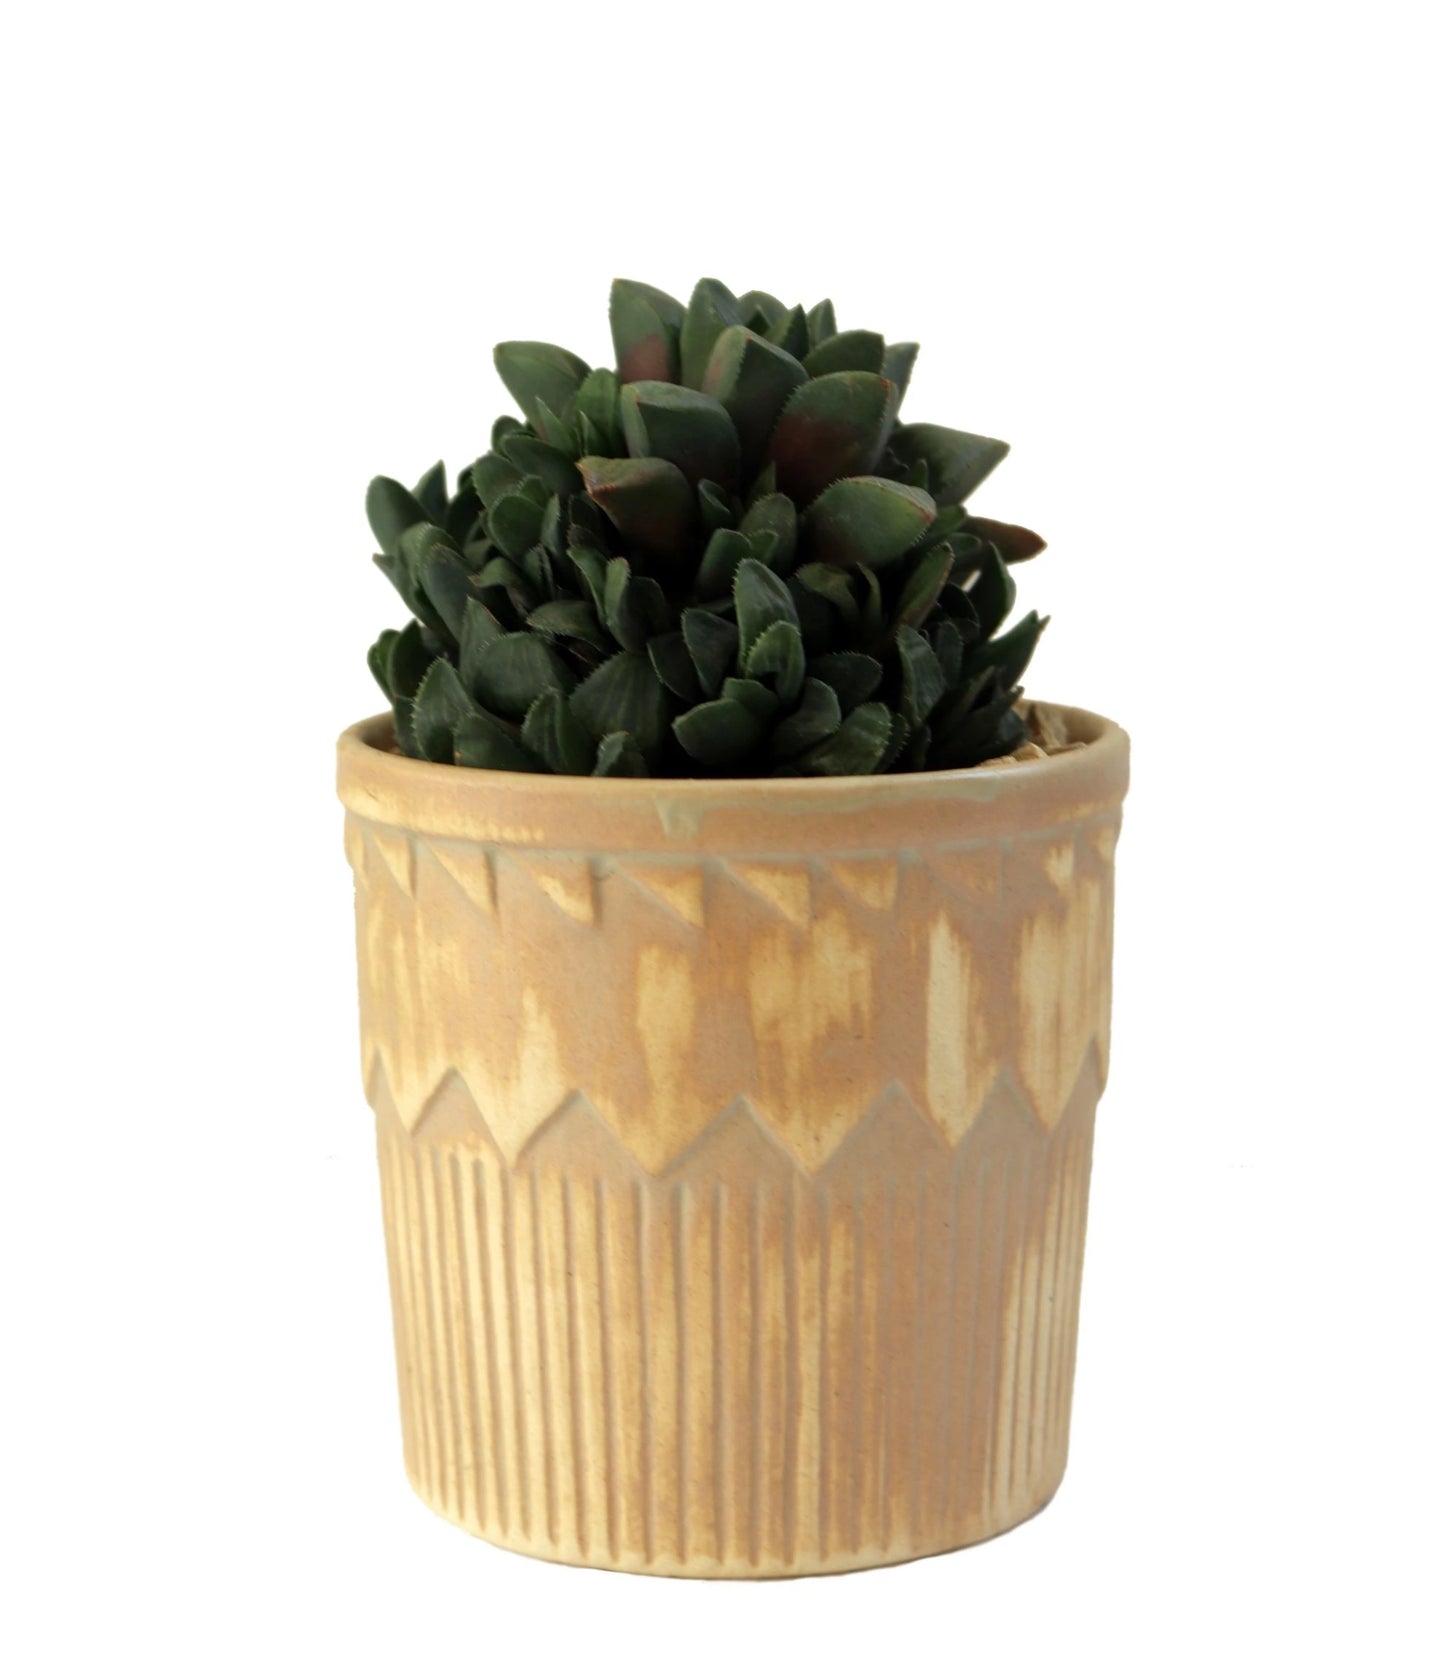 Succulent in a brown pot